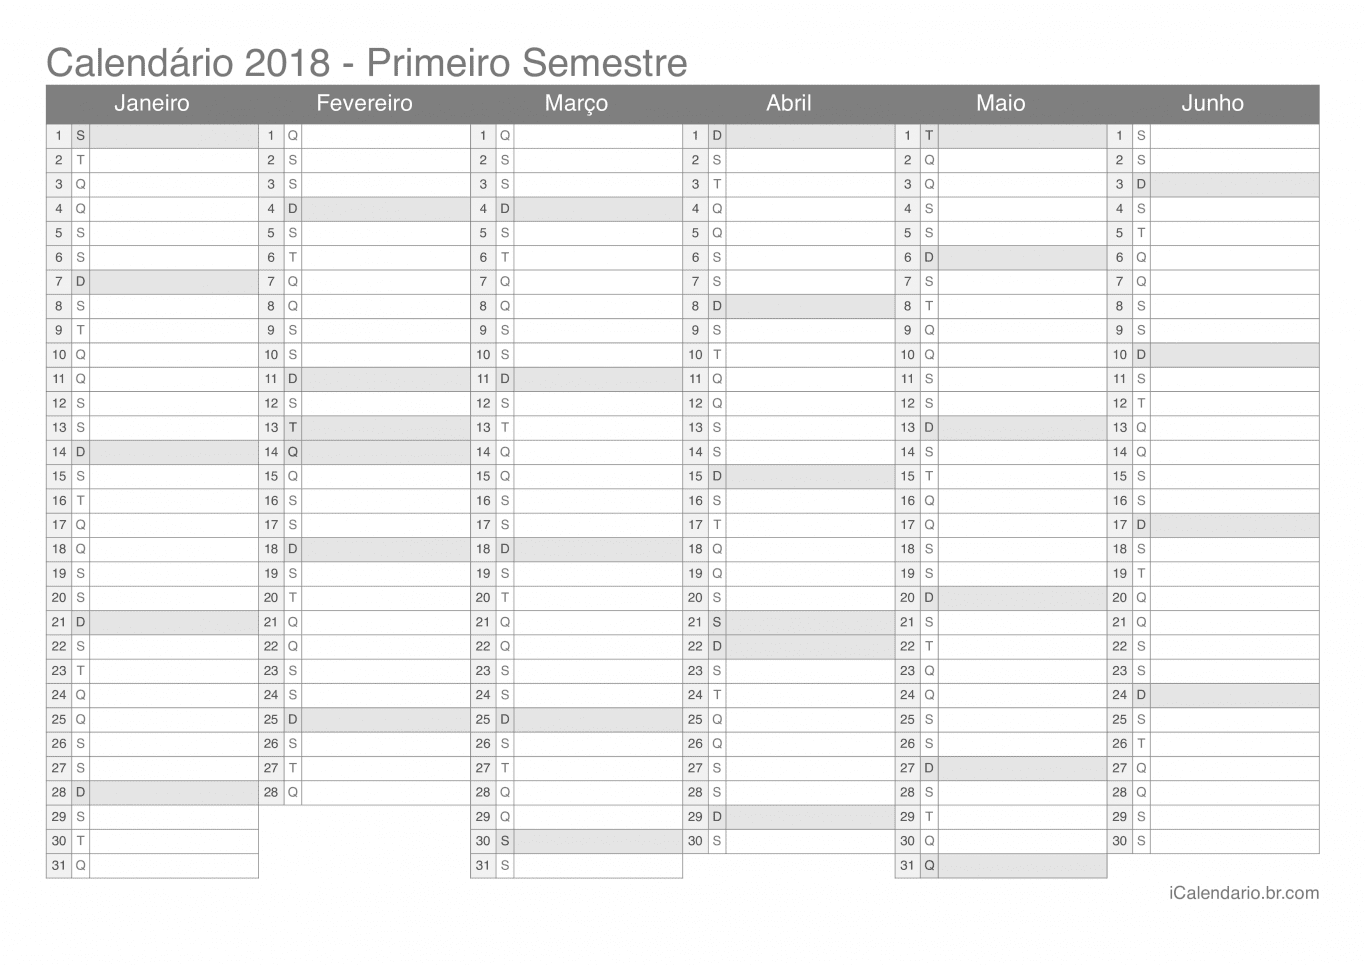 Calendário por semestre 2018